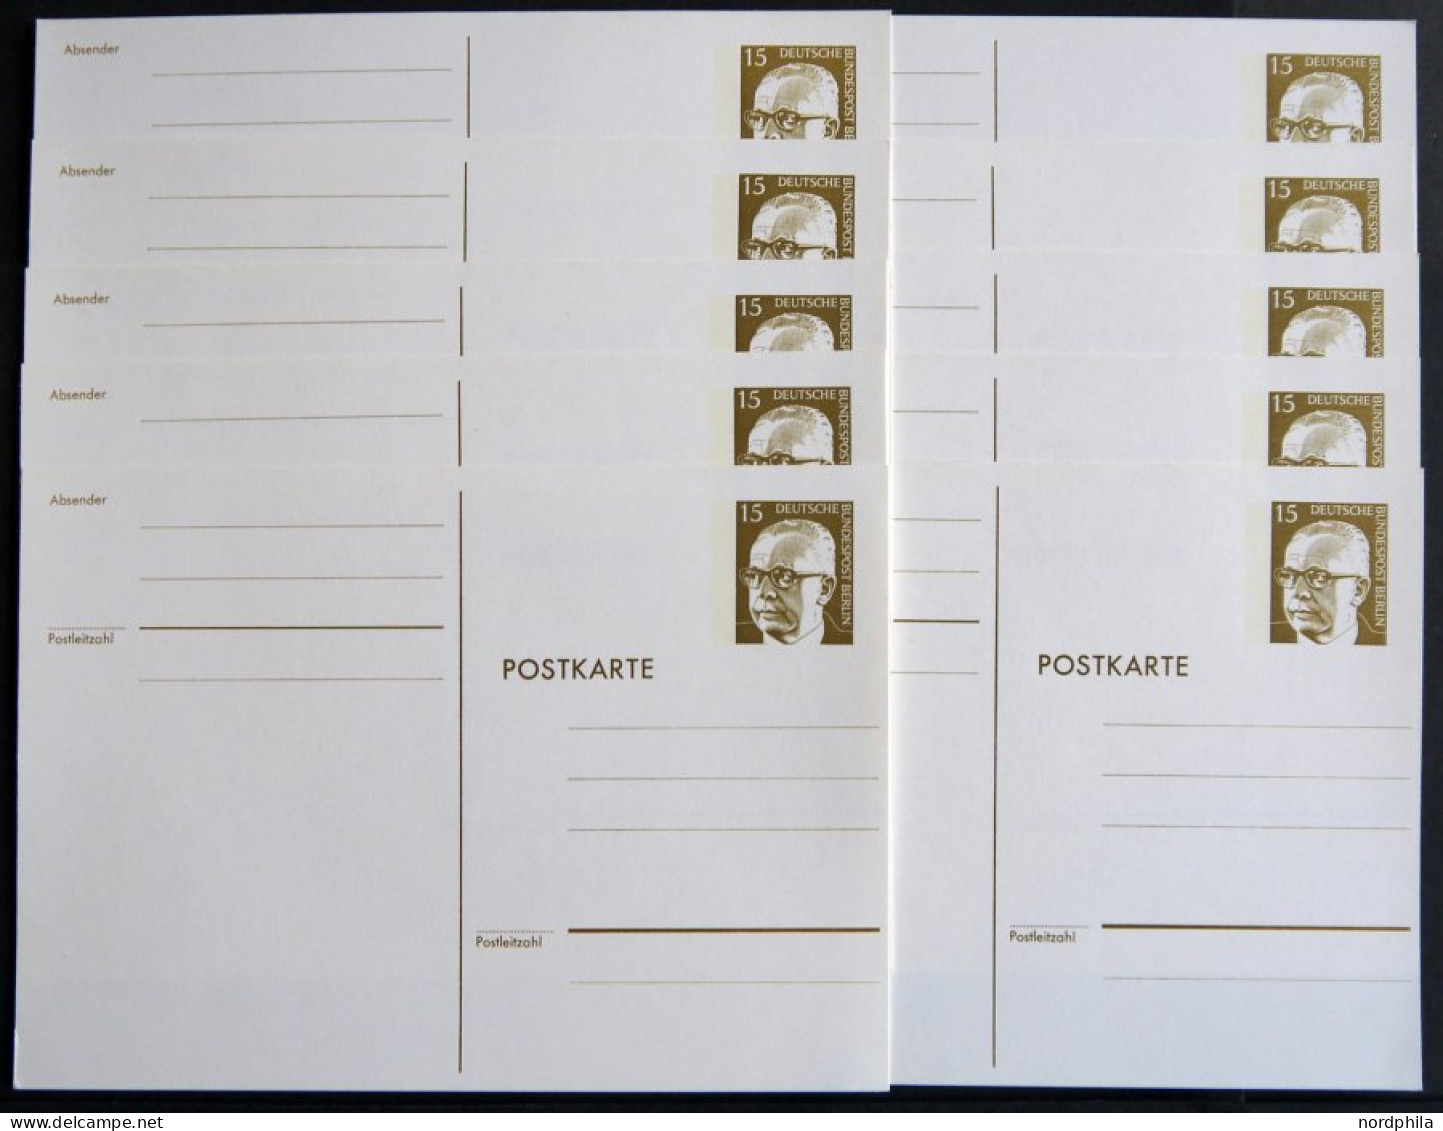 GANZSACHEN P 90b BRIEF, 1973, 15 Pf. Heuss In Dünnen Lettern, Weiß, Ungebraucht, 10 Prachtkarten, Mi. 165.- - Collections